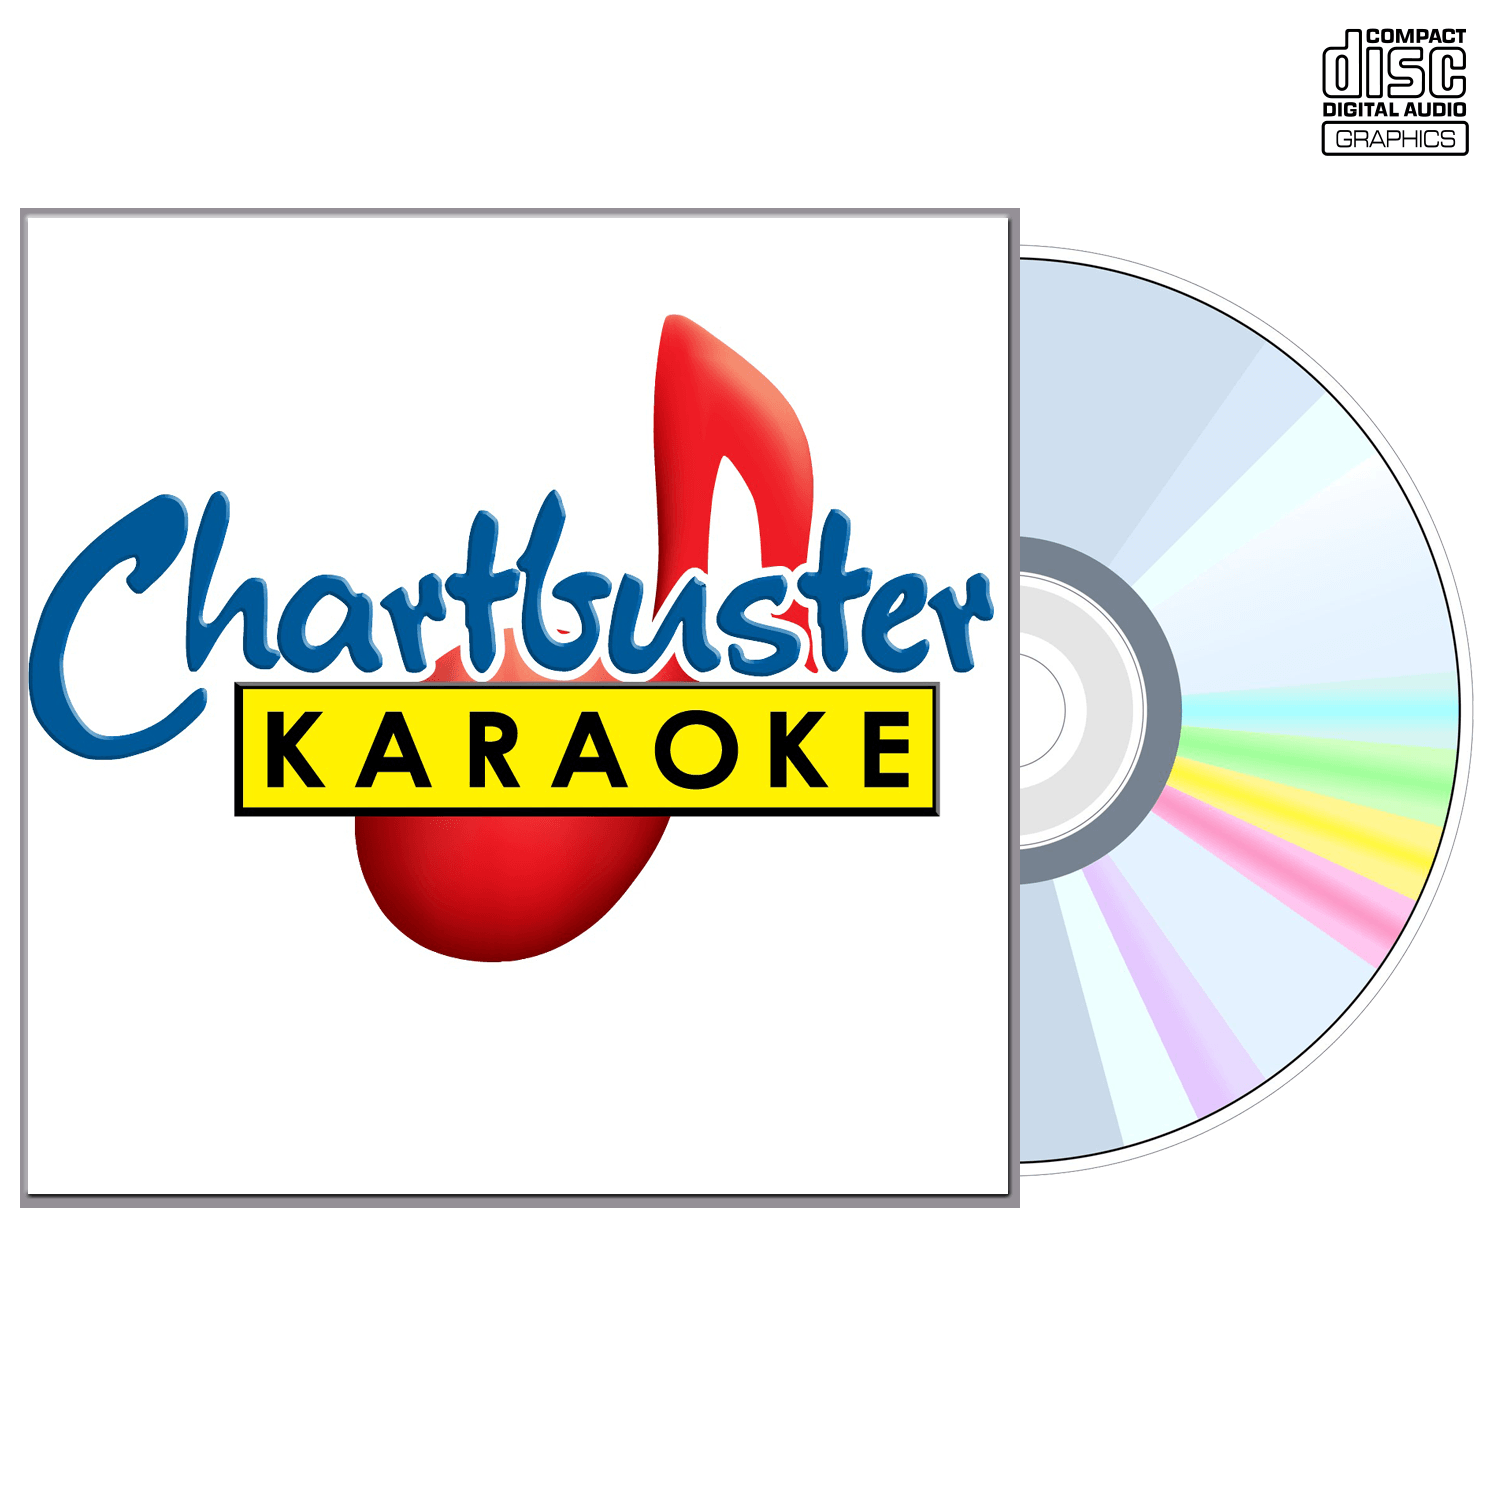 Jimmy Wayne - CD+G - Chartbuster Karaoke - Karaoke Home Entertainment